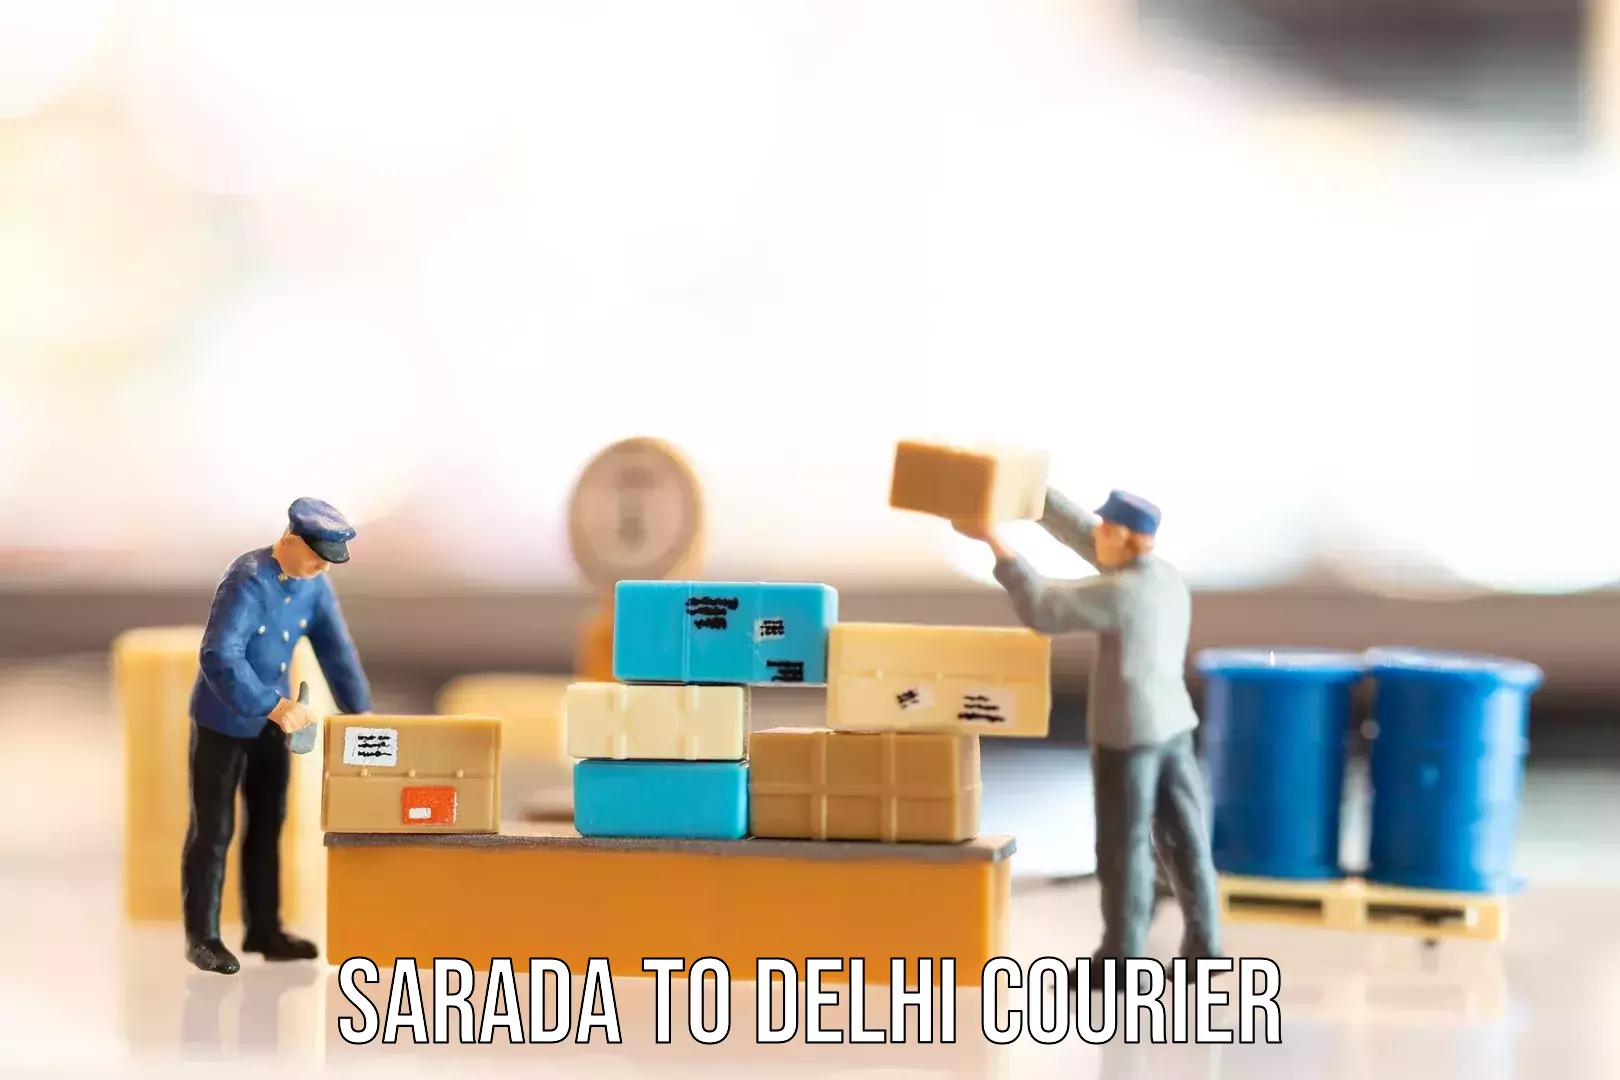 Luggage transfer service Sarada to NCR